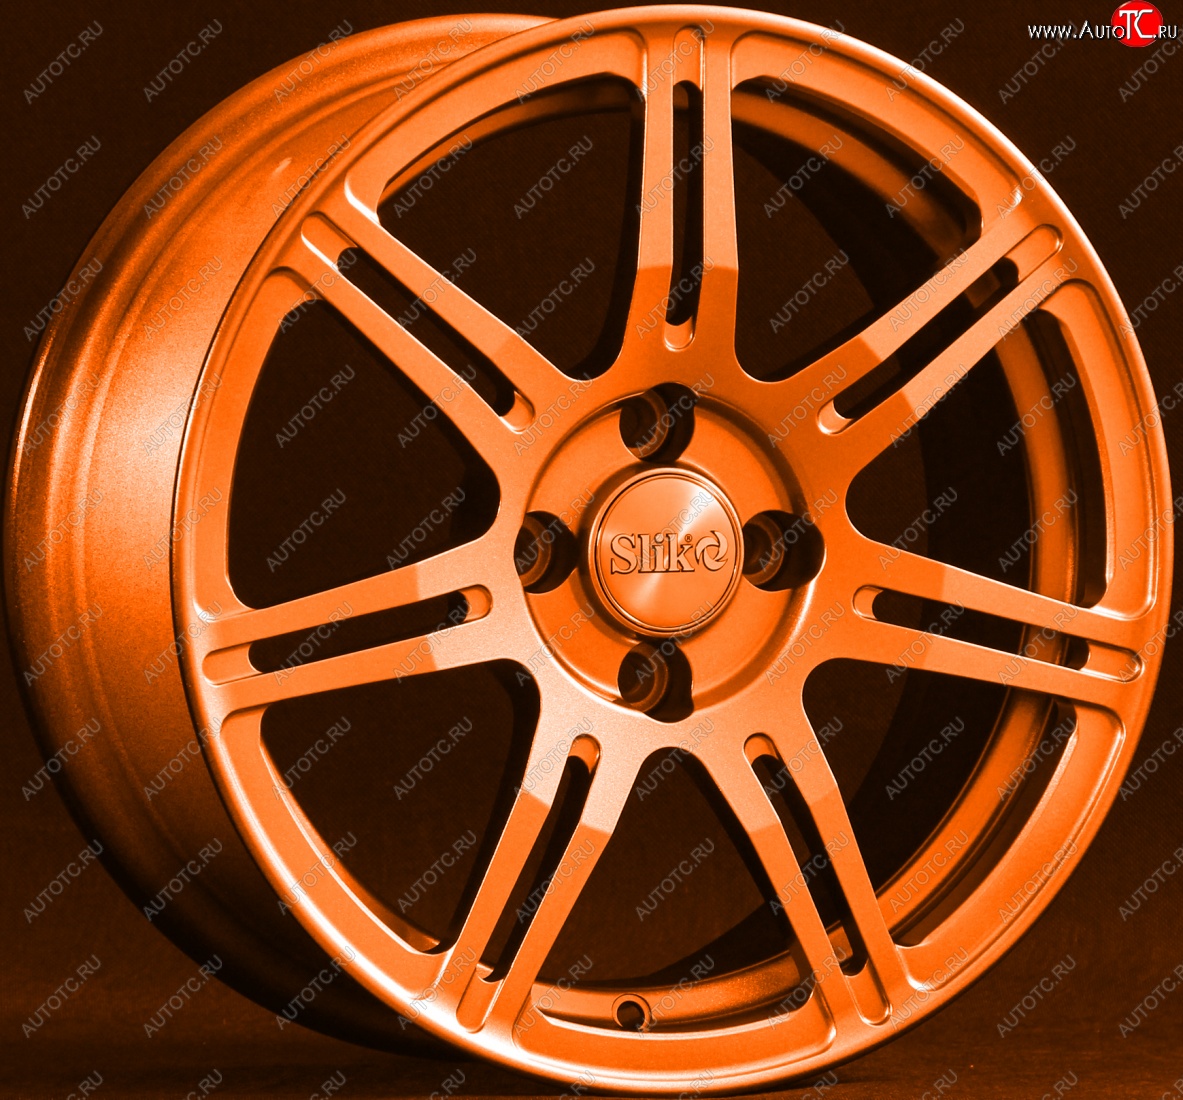 15 249 р. Кованый диск Slik Classik 6.5x15 (Ярко-оранжевый)   (Цвет: Ярко-оранжевый)